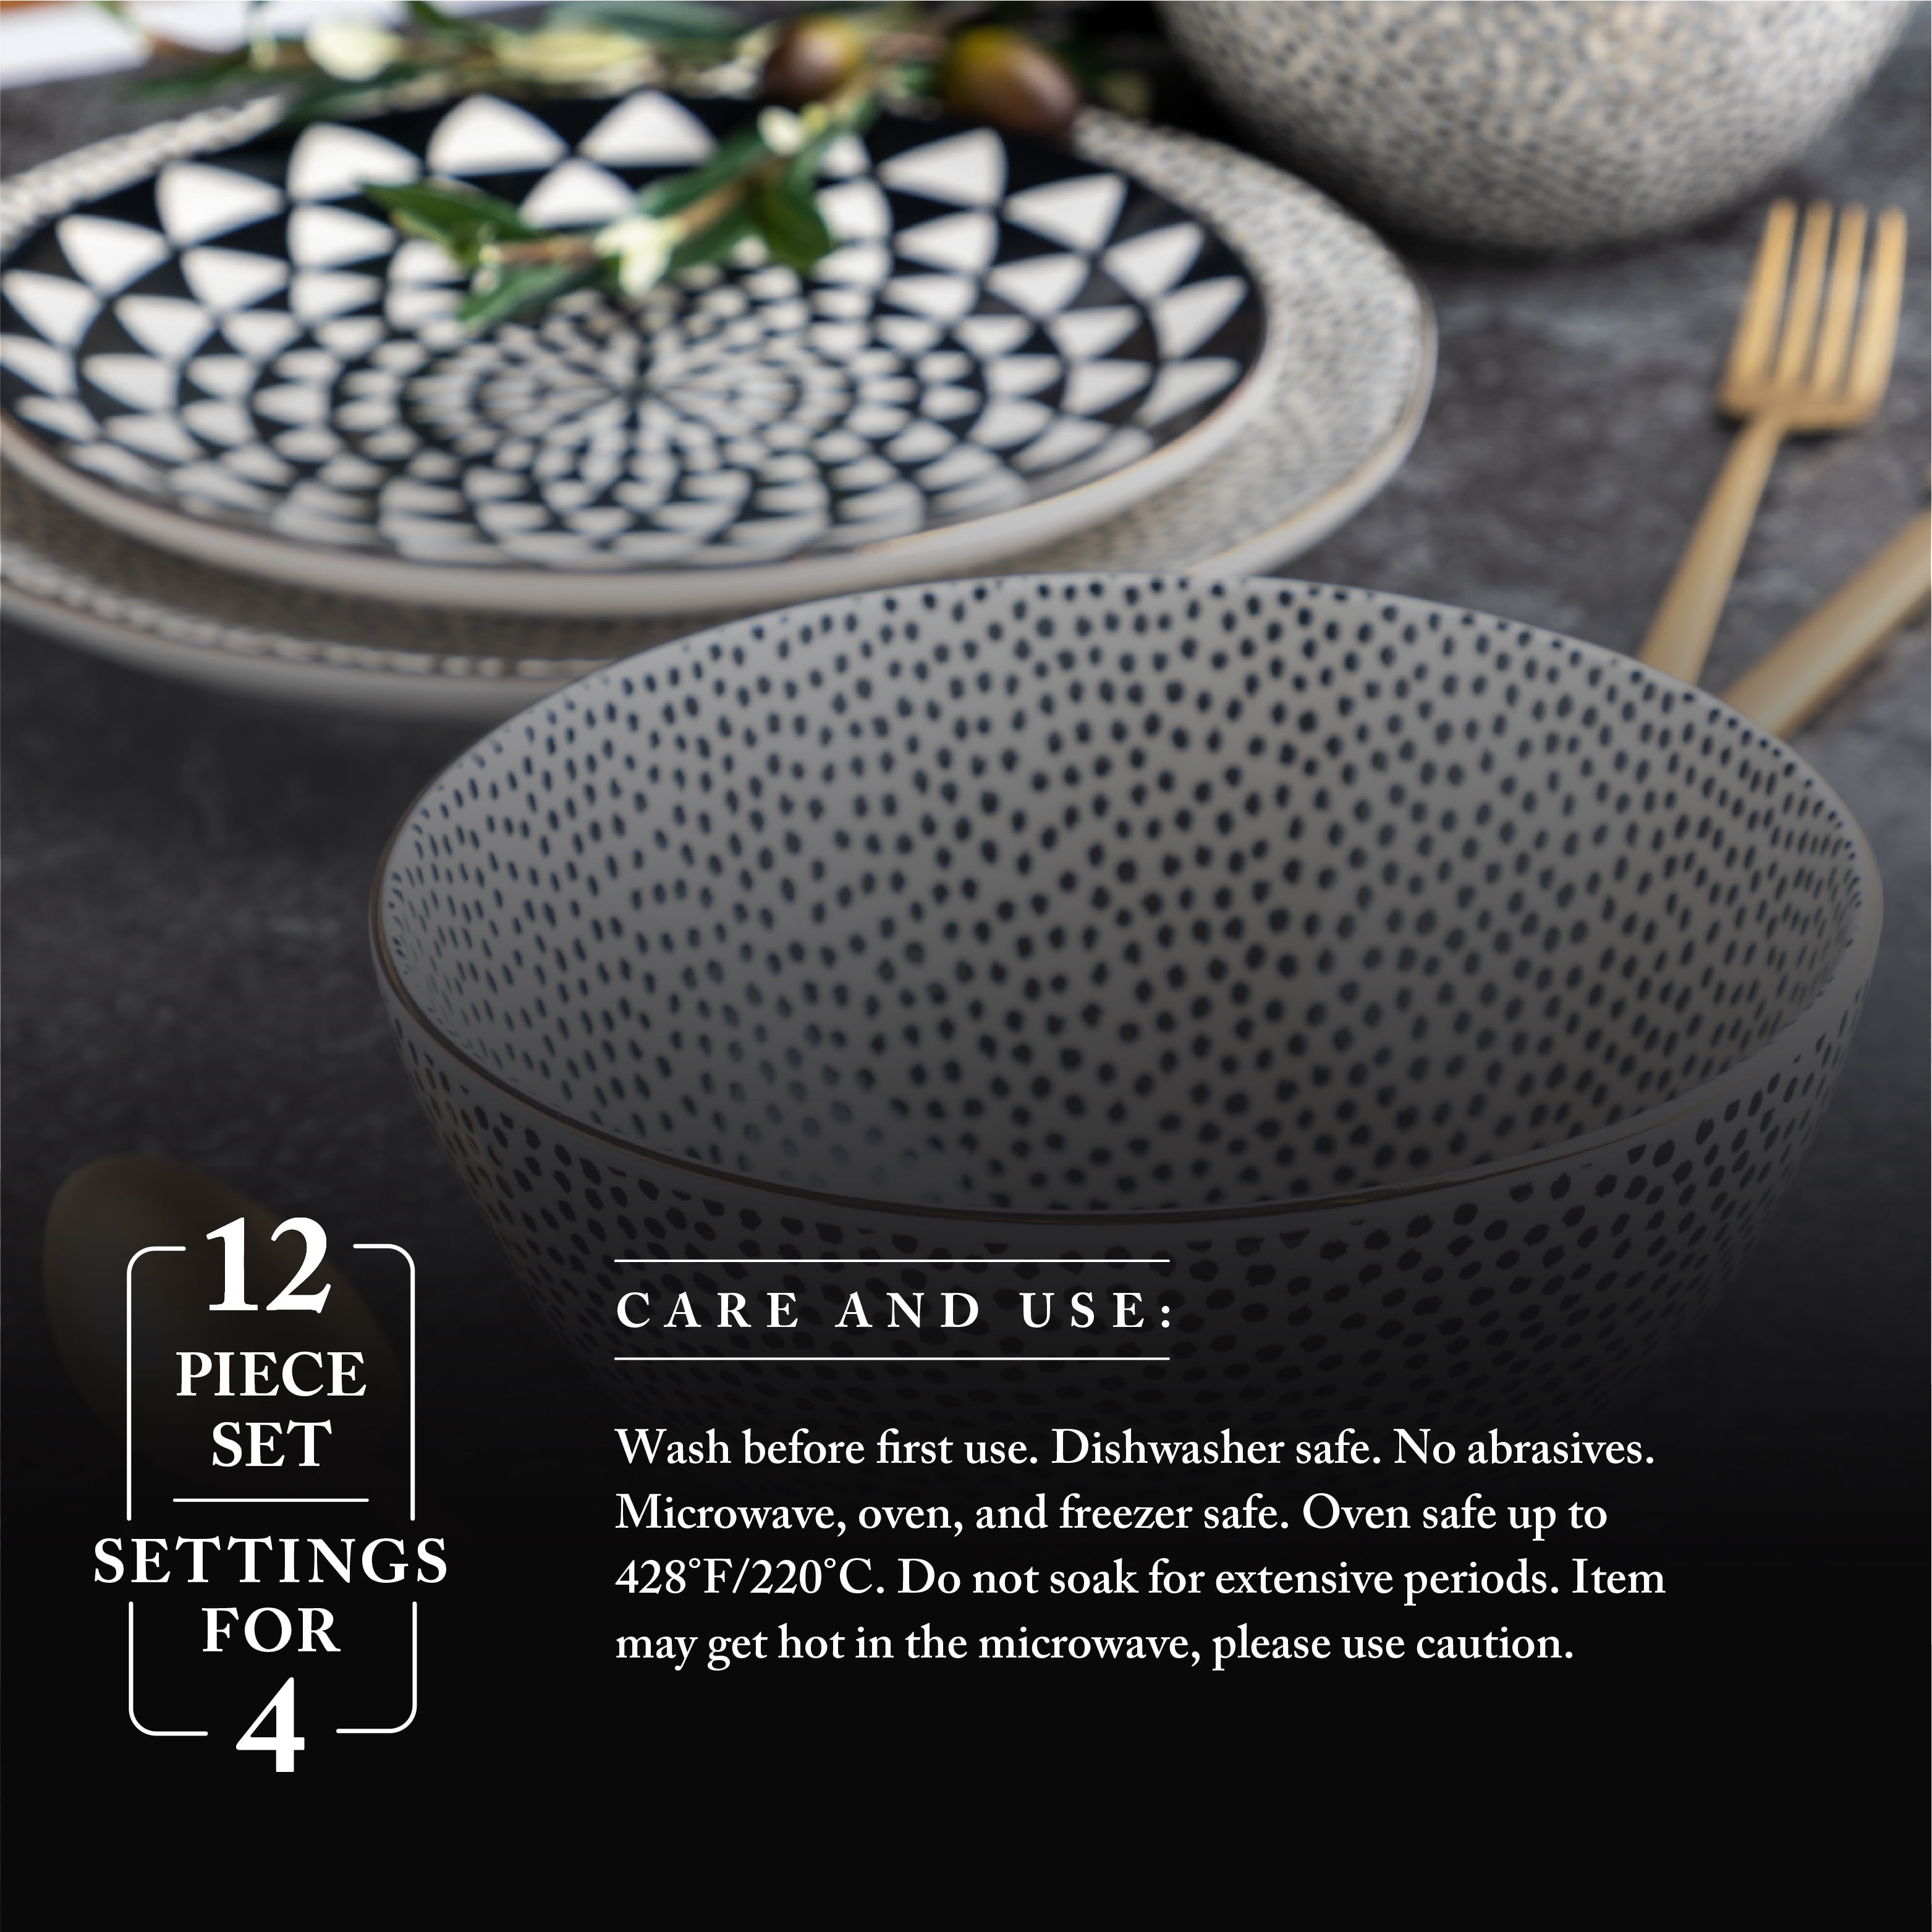 Thyme & Table Stoneware Rectangular Baker, Baking Dish, Black & White Dot, 2-Piece Set